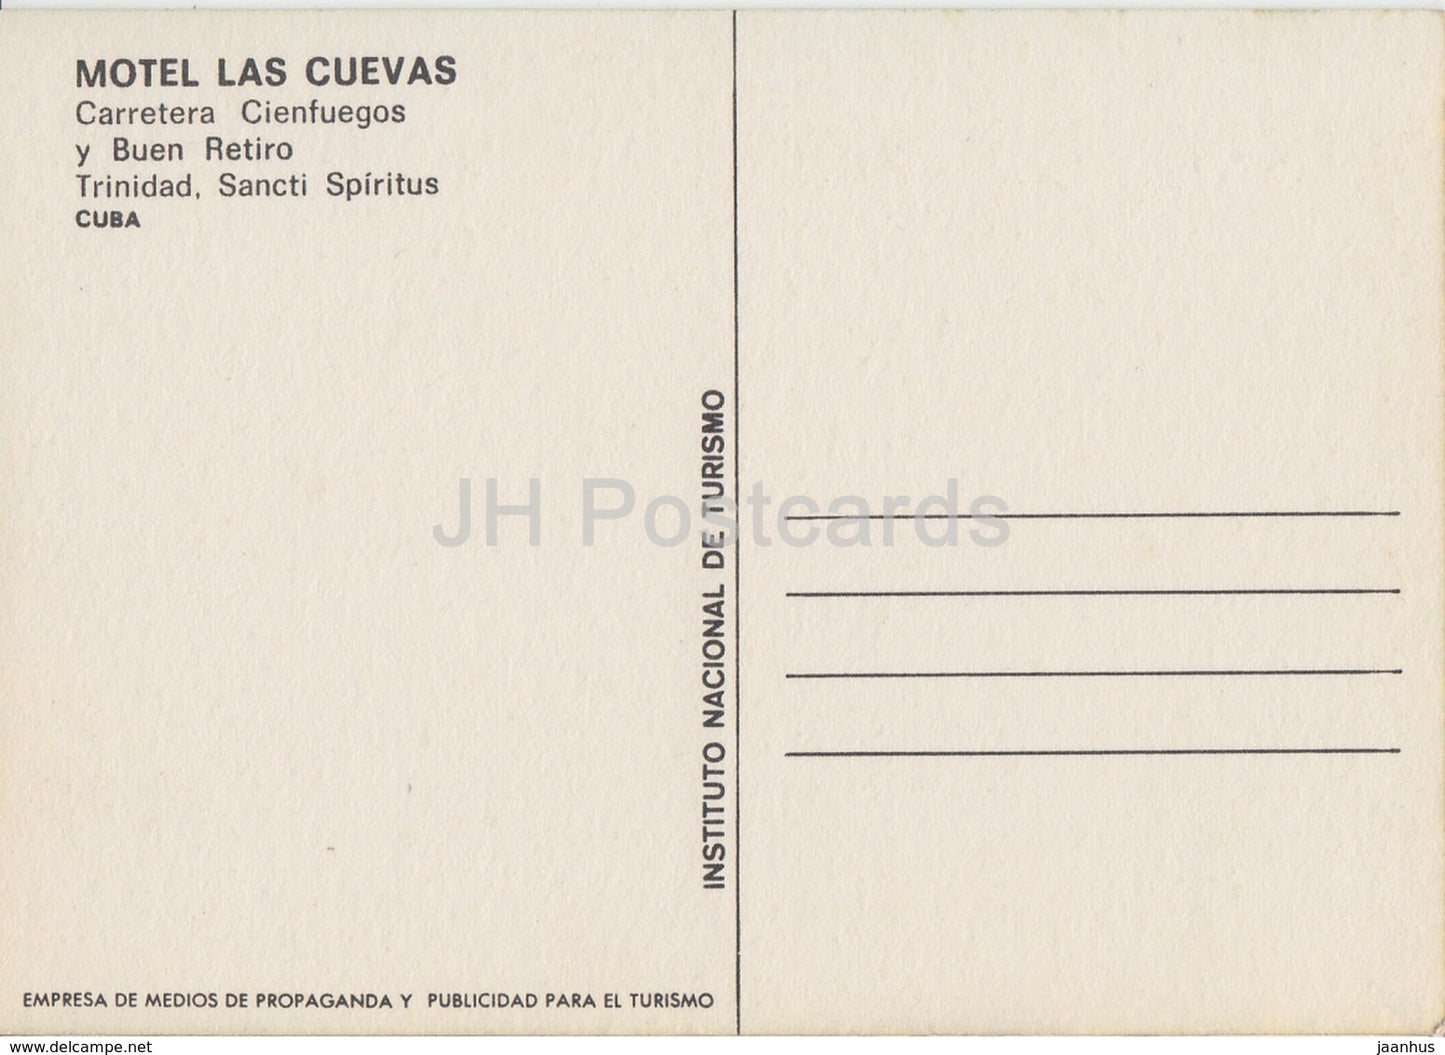 Motel Las Cuevas - Carretera Cienfuegos y Buen Retiro Trinidad , Sancti Spiritus - Cuba - unused - JH Postcards